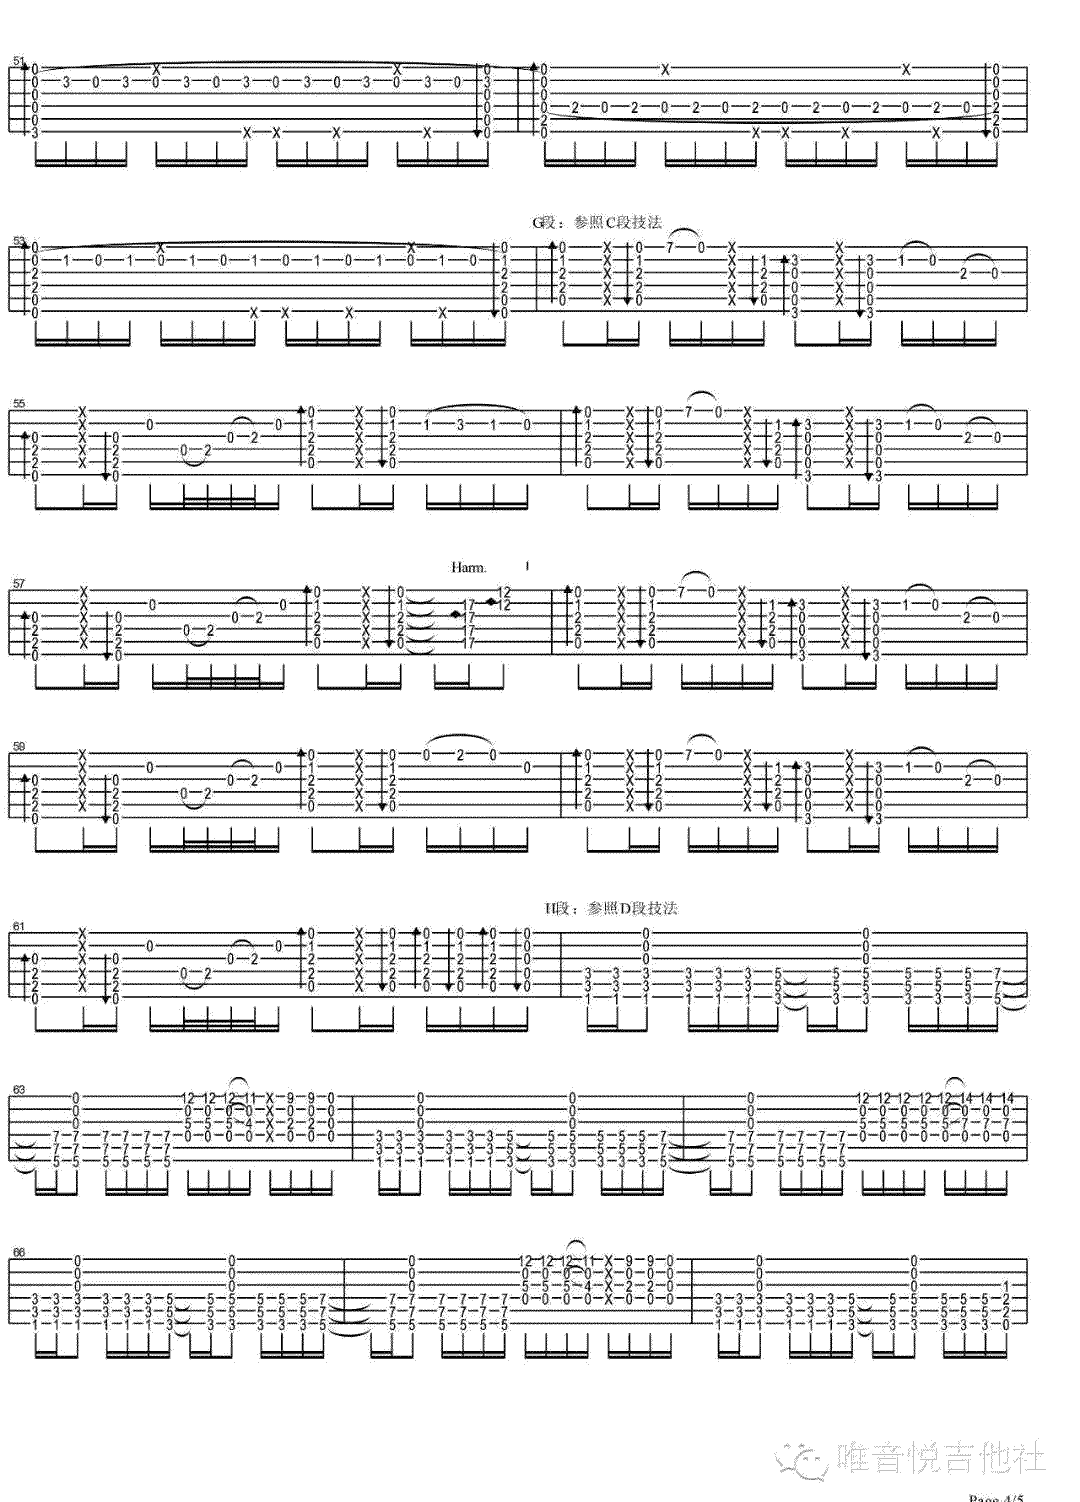 无题指弹吉他谱独奏谱第(4)页